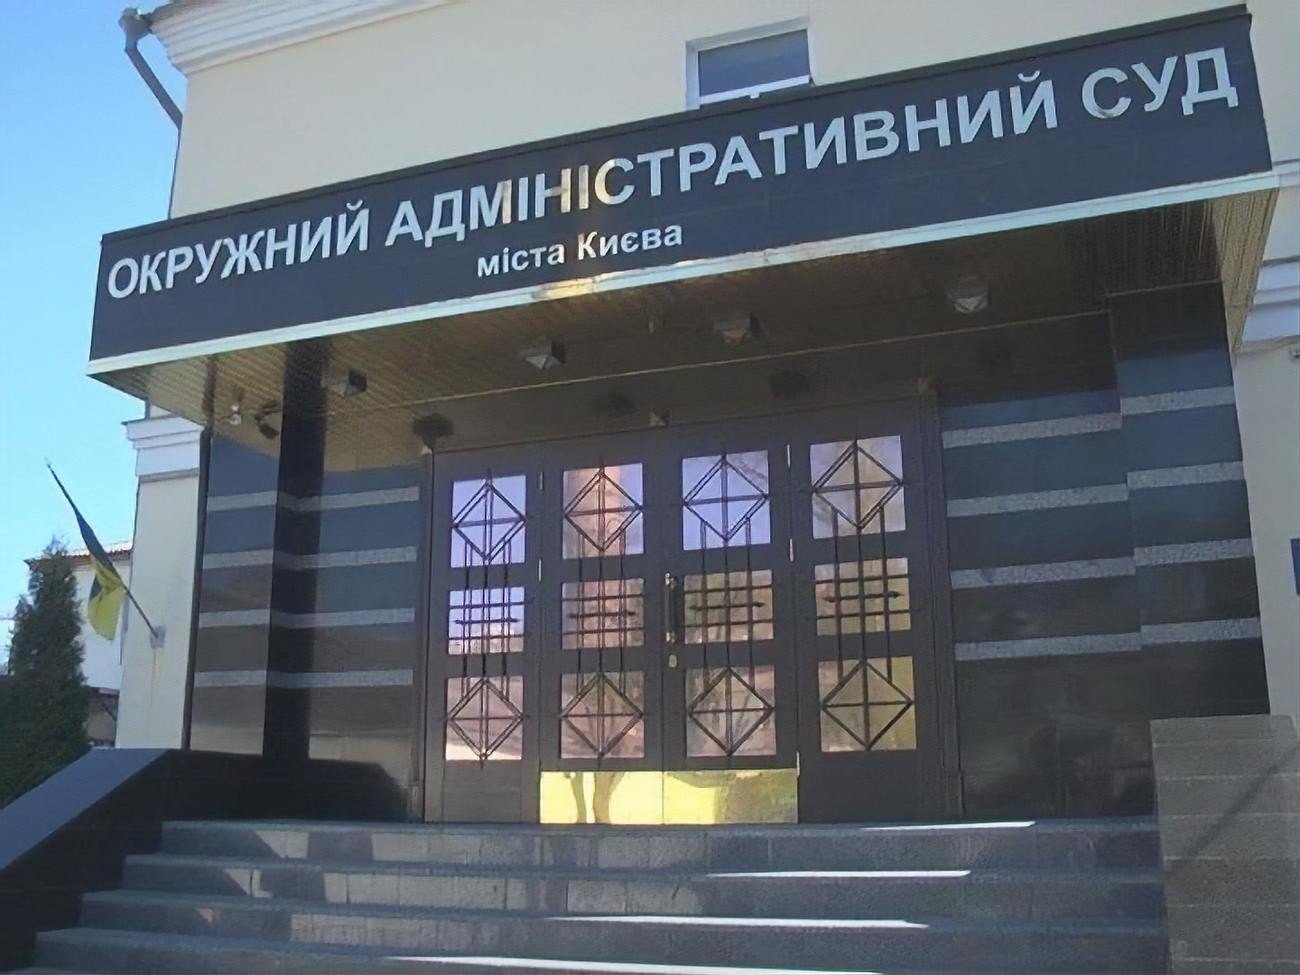 НАБУ предъявило подозрение Окружному админсуду Киева